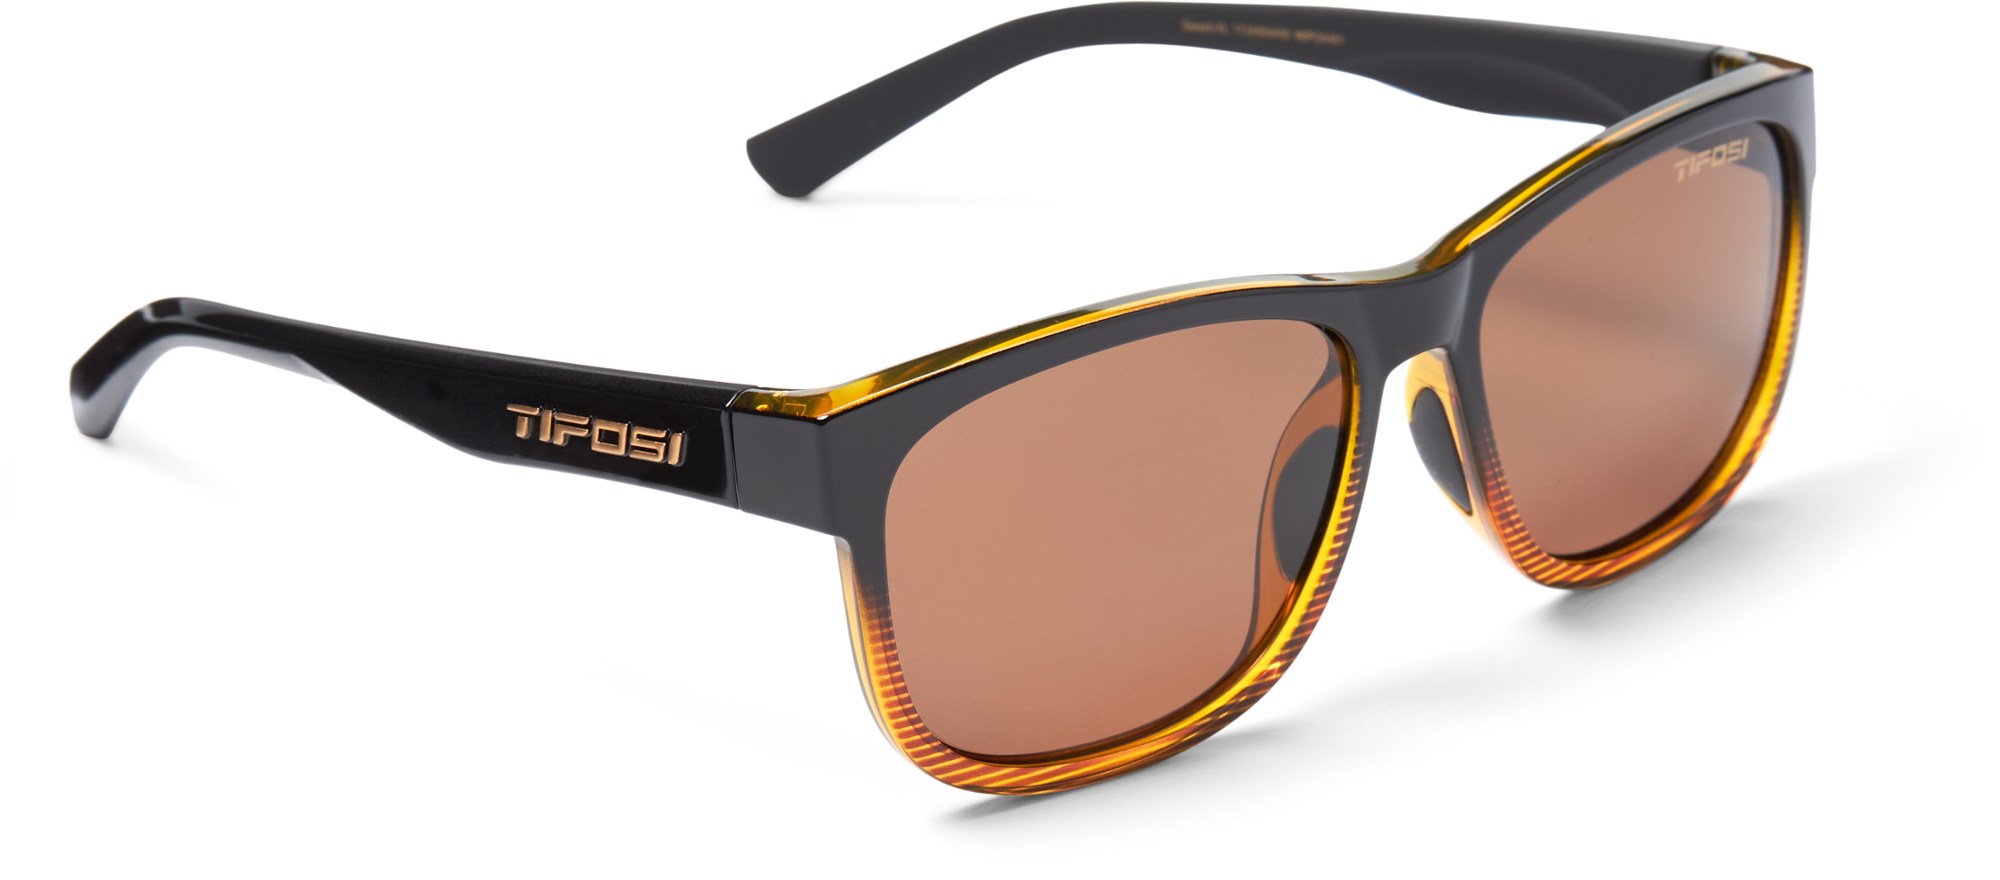 Поляризованные солнцезащитные очки Swank XL Tifosi, коричневый фото